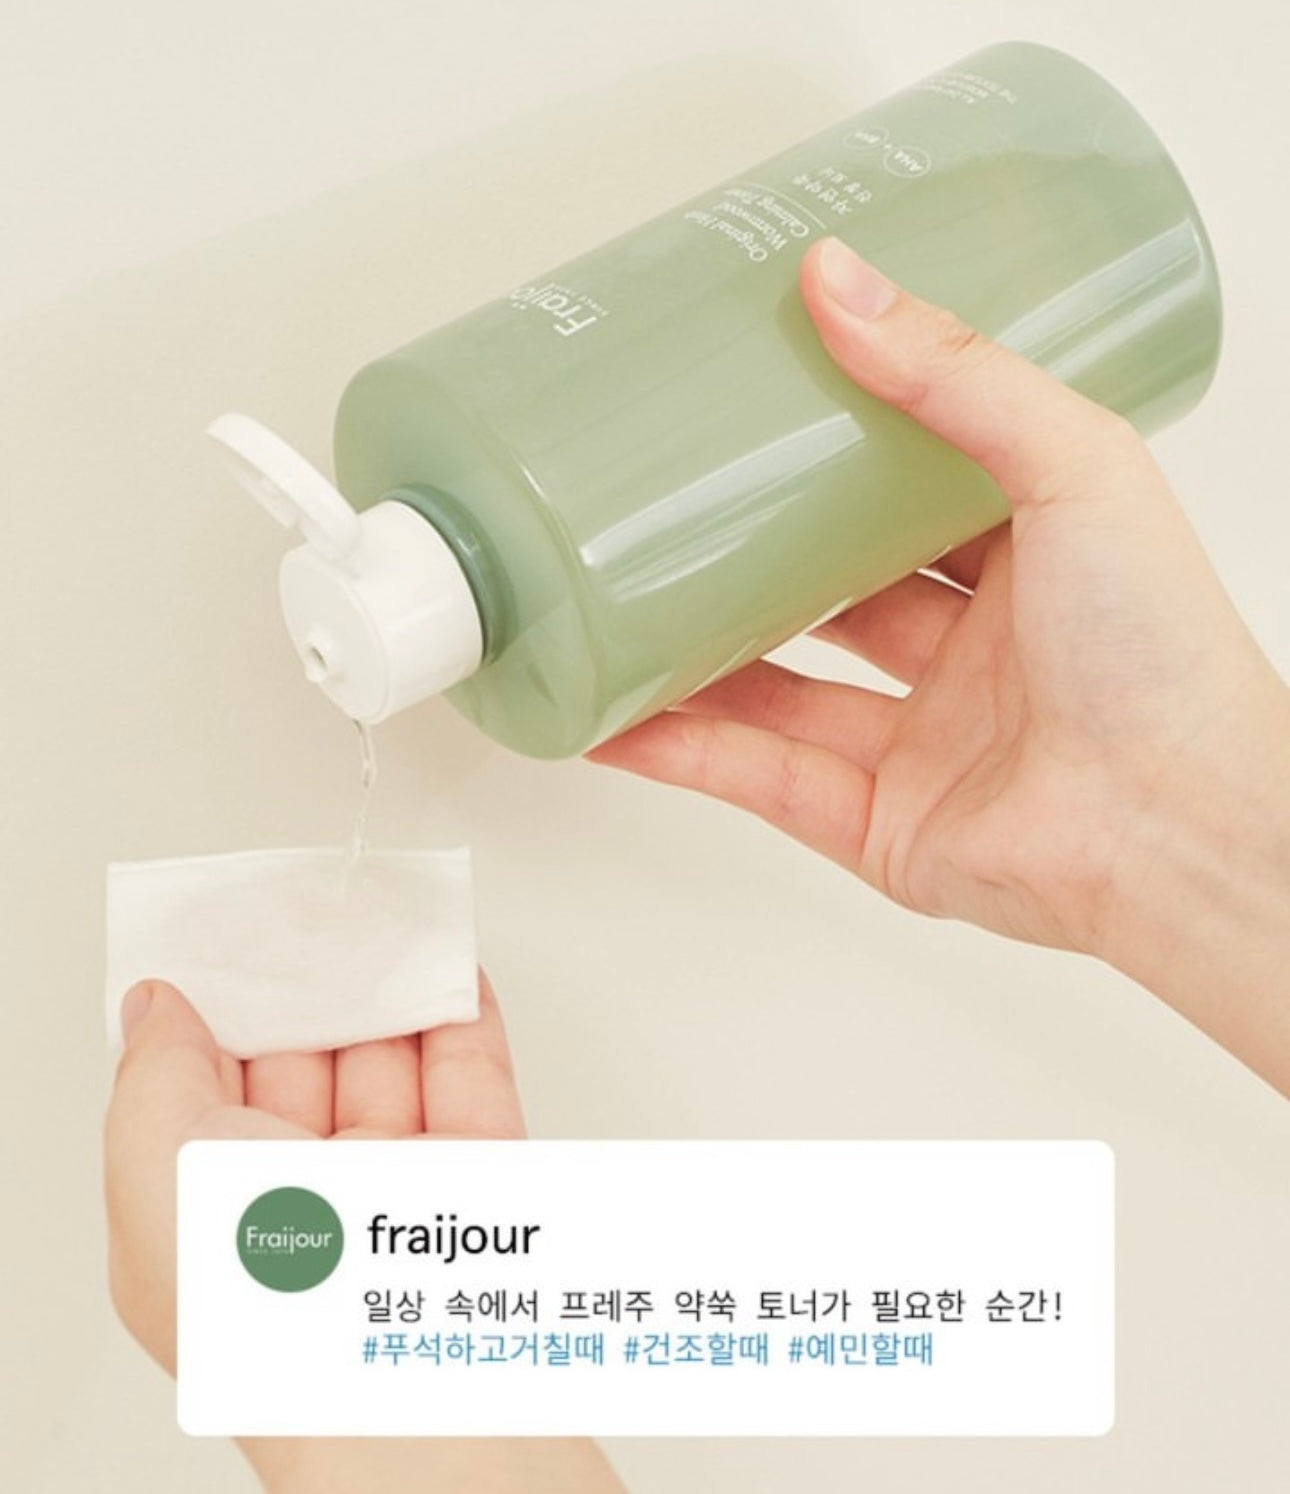 韓國Local天然品牌Fraijour💚 onni話呢個Brand好出名 價錢又好親民 🇰🇷 | 天然艾草深層舒緩補濕爽膚水🌿